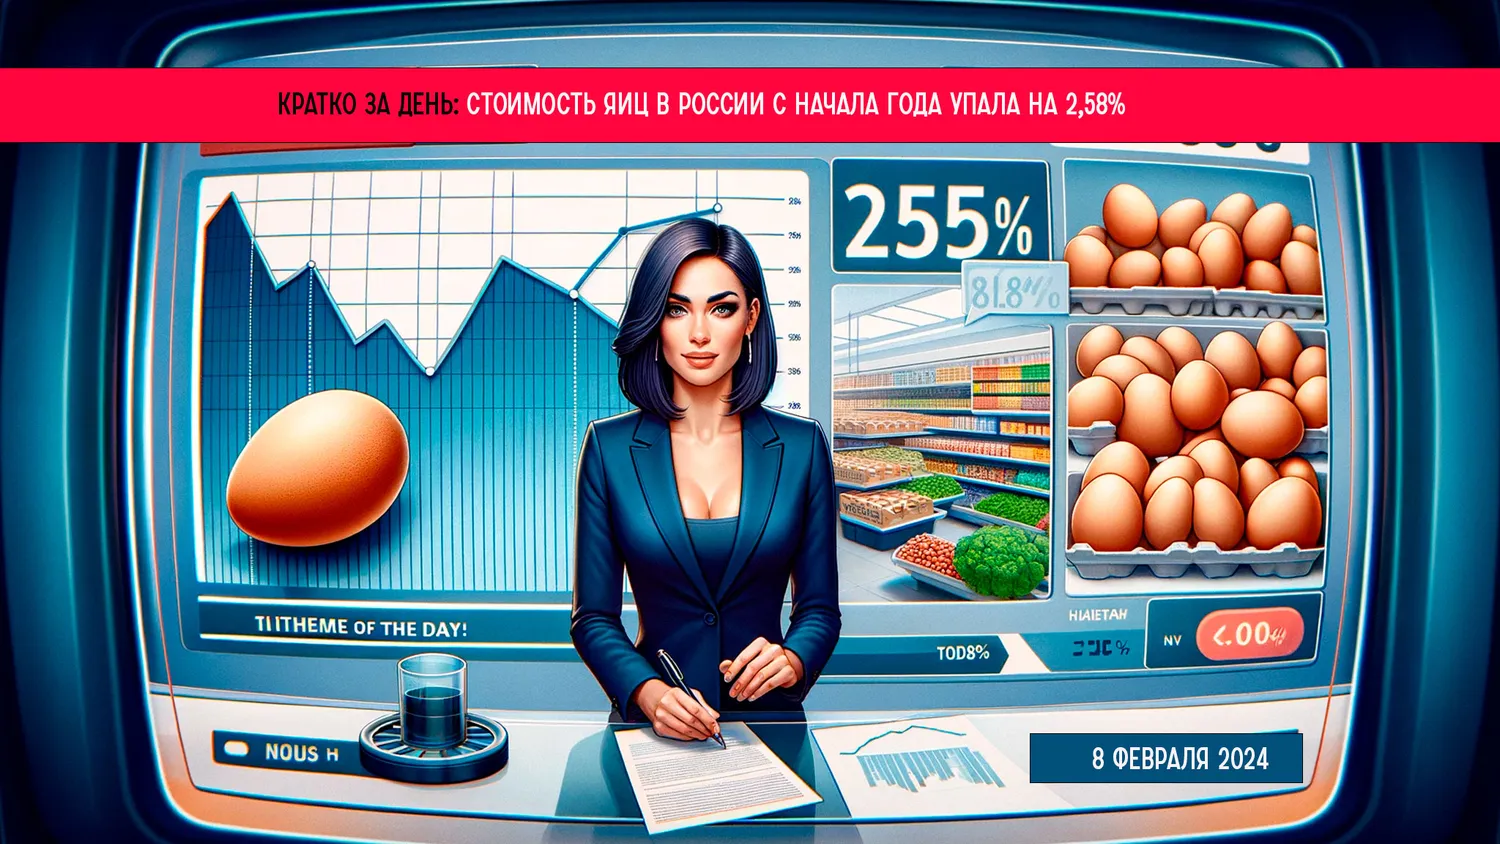 Кратко за день: стоимость яиц в России с начала года упала на 2,58%